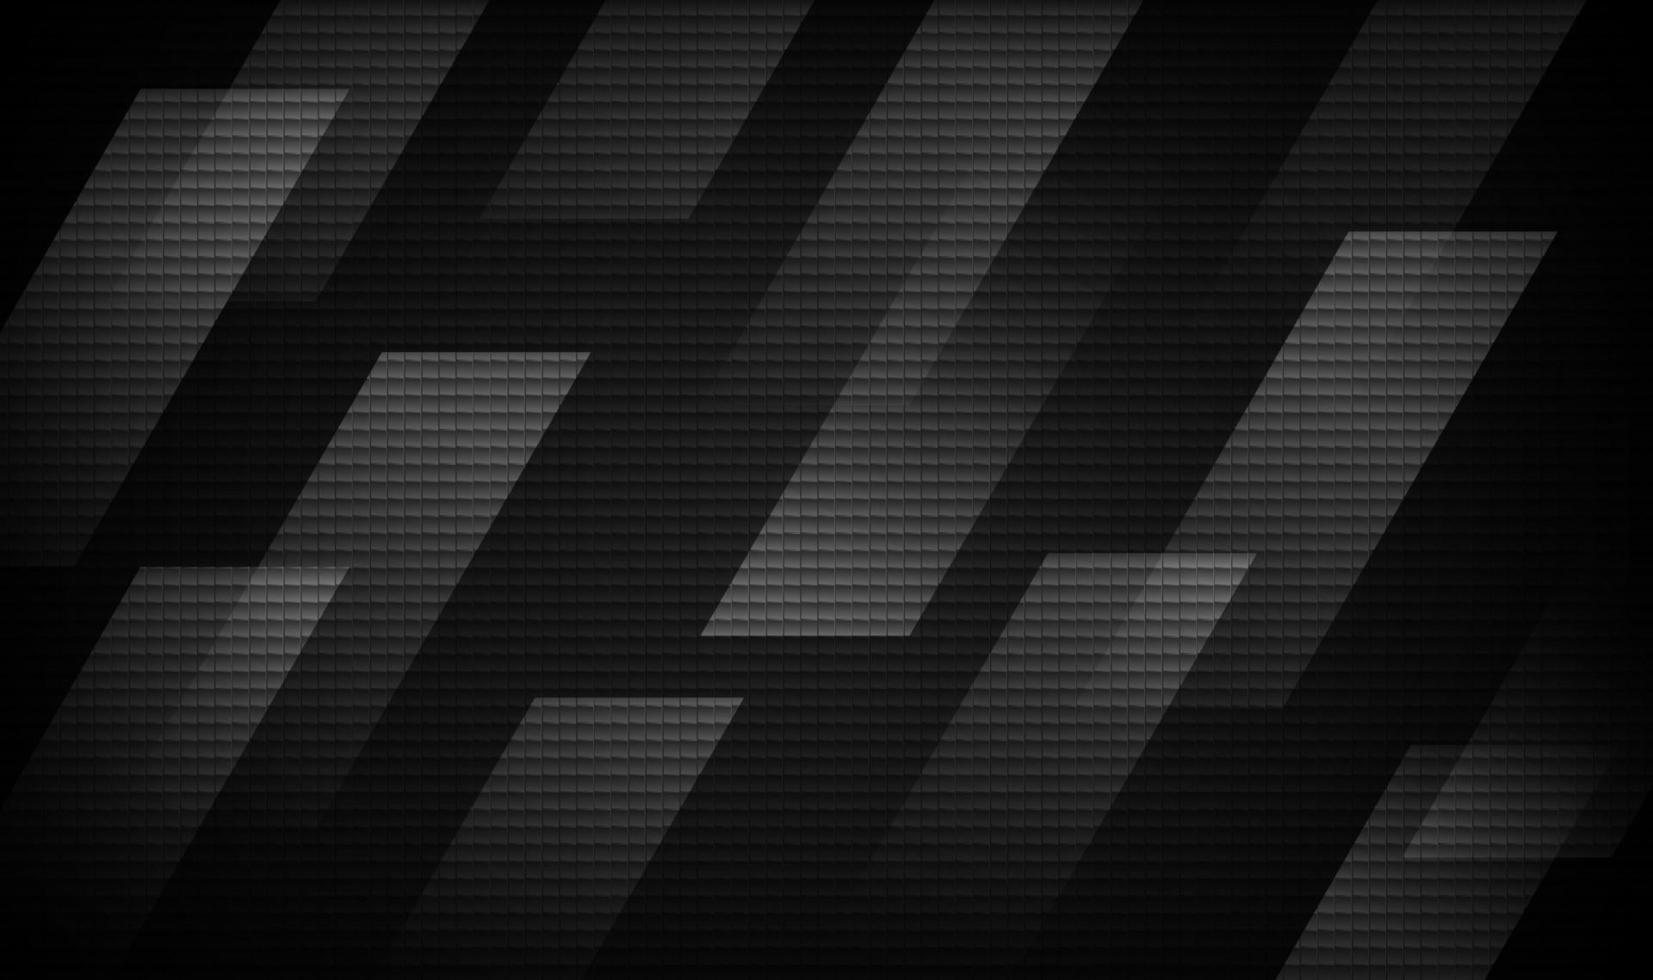 Capa de superposición de fondo abstracto geométrico negro 3d en el espacio oscuro con efecto de estilo de movimiento de línea. concepto de textura de fibra de carbono de elemento de diseño gráfico para banner, volante, tarjeta, folleto, portada, etc. vector